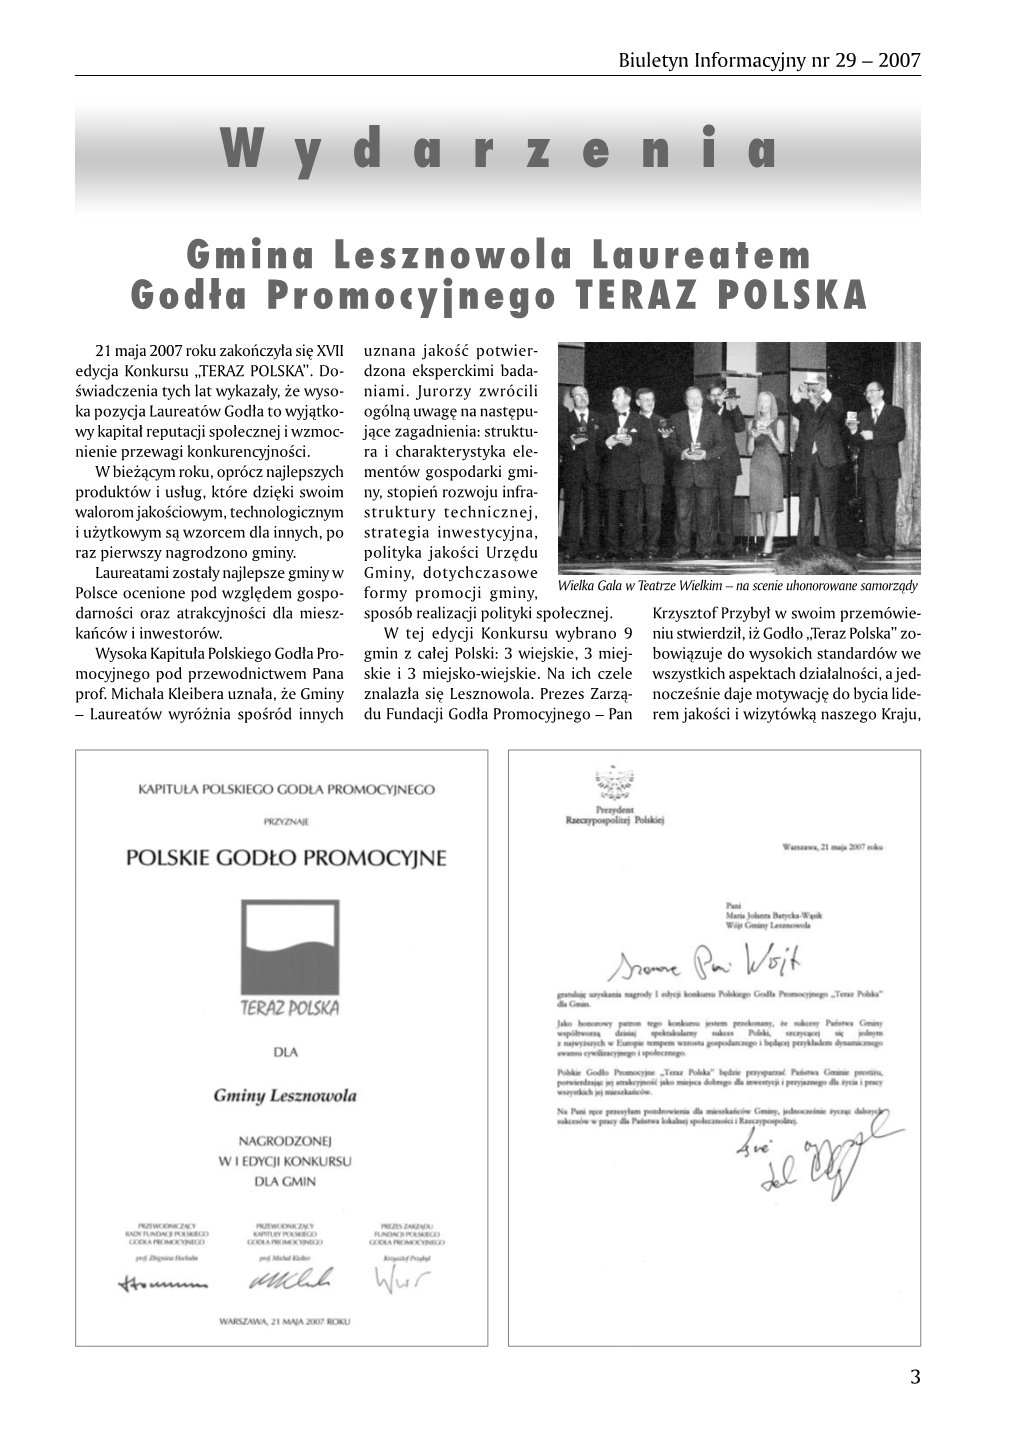 Biuletyn Informacyjny Nr 29 (2007).Pdf